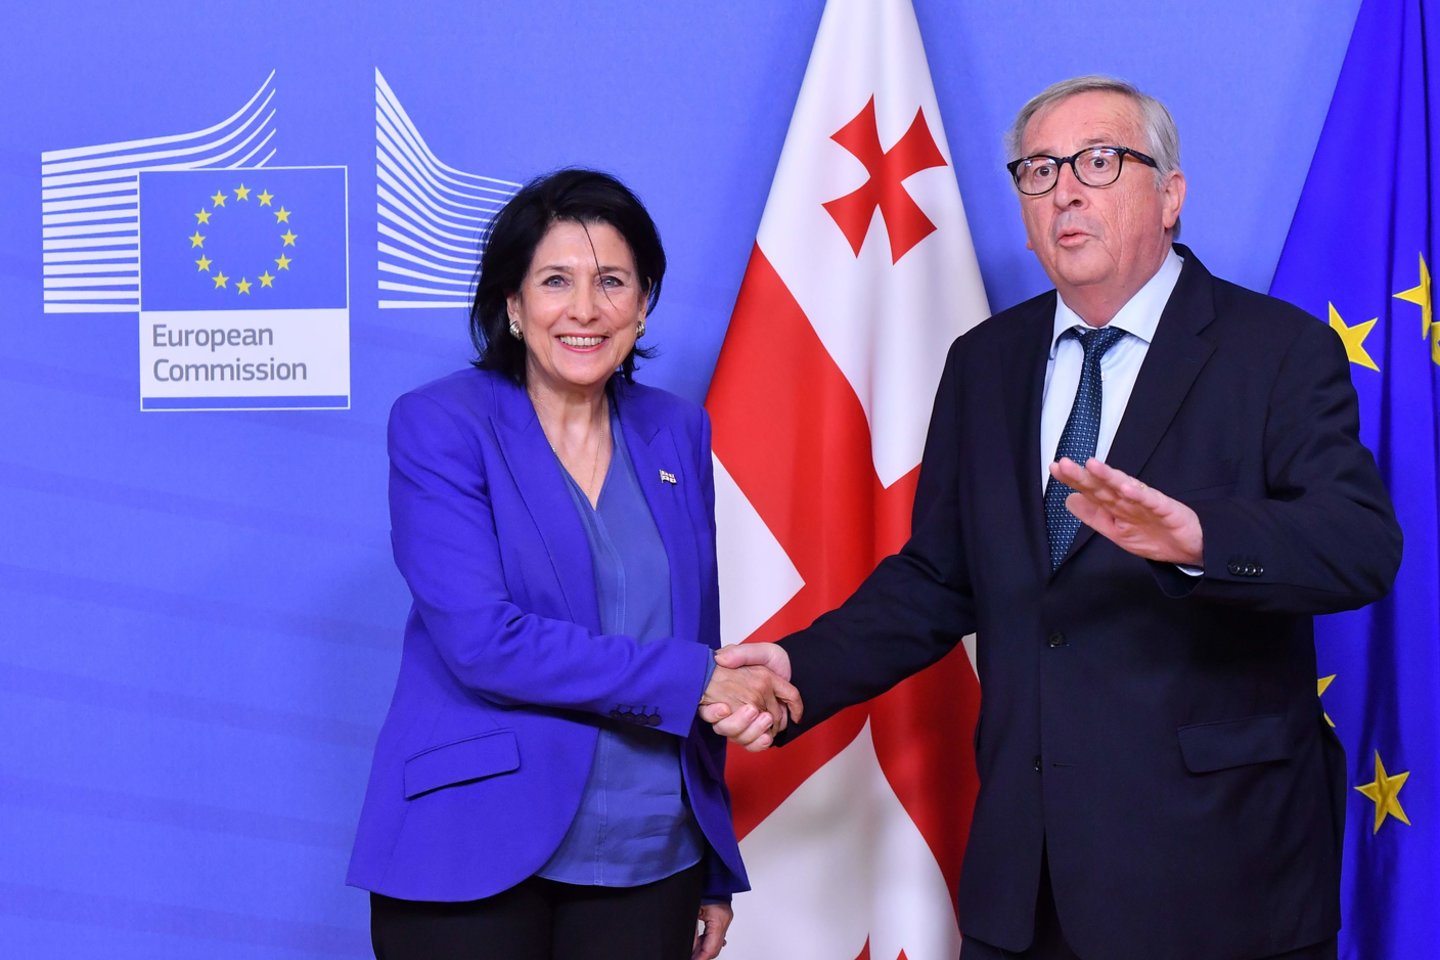  Gruzijos prezidentė Salomė Zurabišvili pranešė Briuselyje paskelbusi iniciatyvą jos šaliai įstoti į Europos struktūras be narystės Europos Sąjungoje.<br>AFP/Scanpix nuotr.